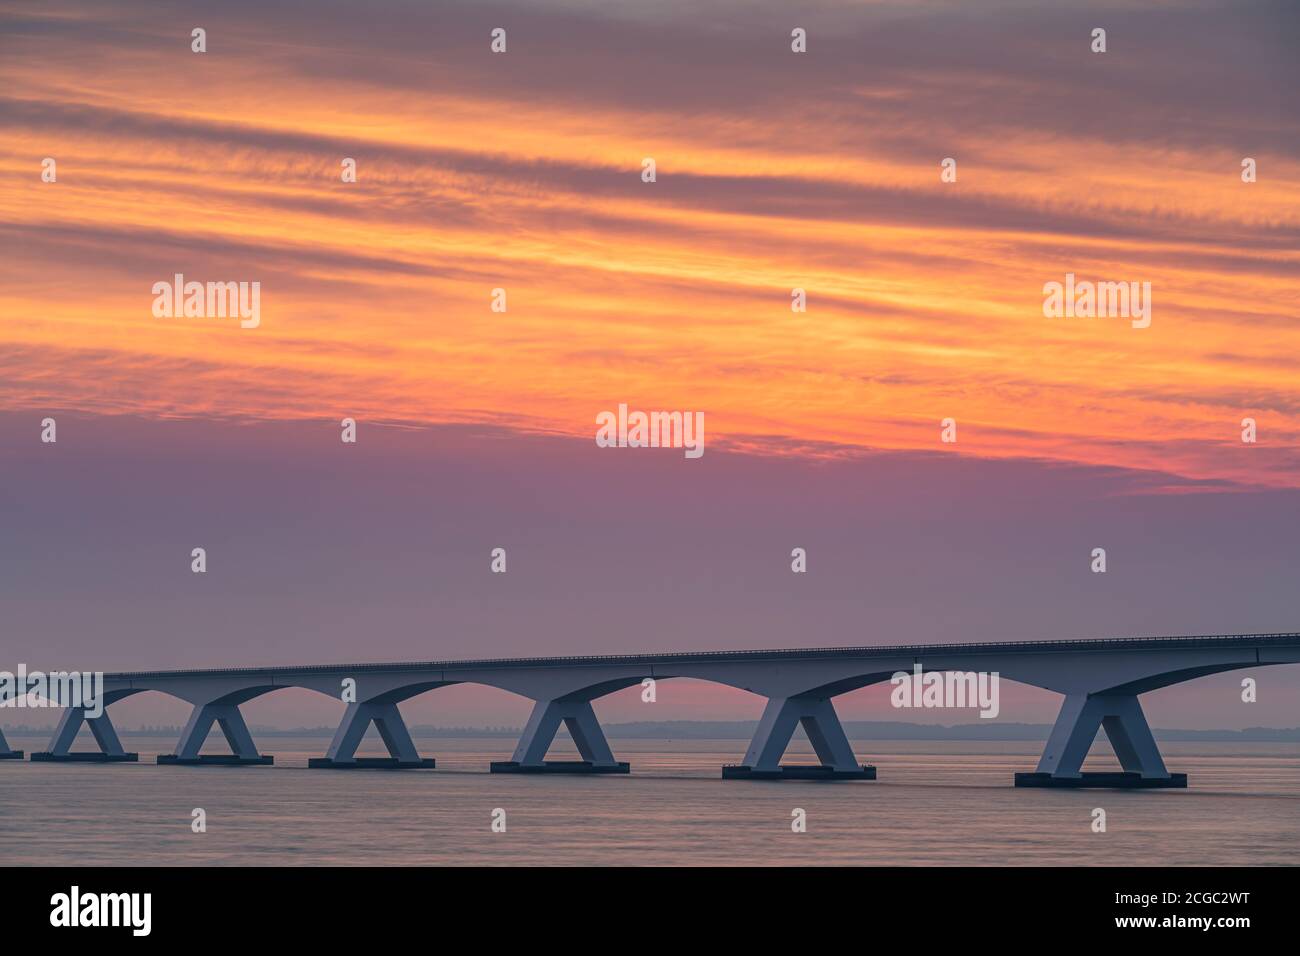 Il ponte di Zeeland (Olandese: Zeelandbrug) è il più lungo ponte nei Paesi Bassi. Il ponte attraversa il Oosterschelde estuario. Esso collega le isole Foto Stock